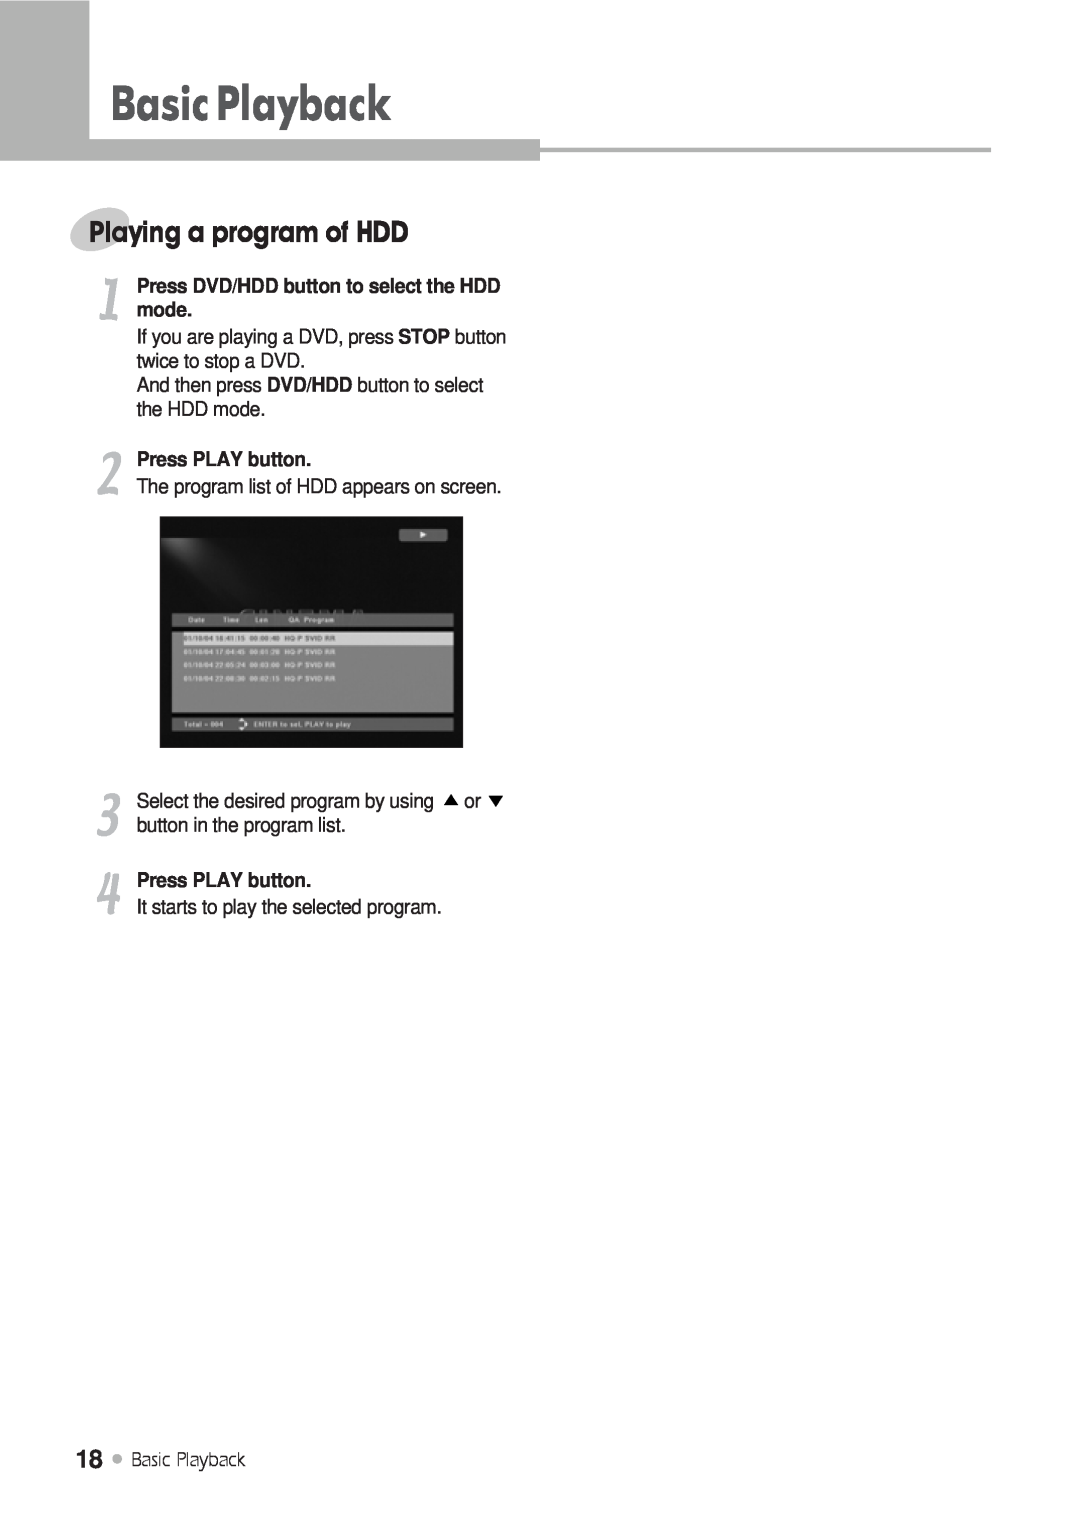 Kodak DRHD-120 manual Playing a program of HDD, Press PLAY button, Basic Playback, BasicPlayback, mode 